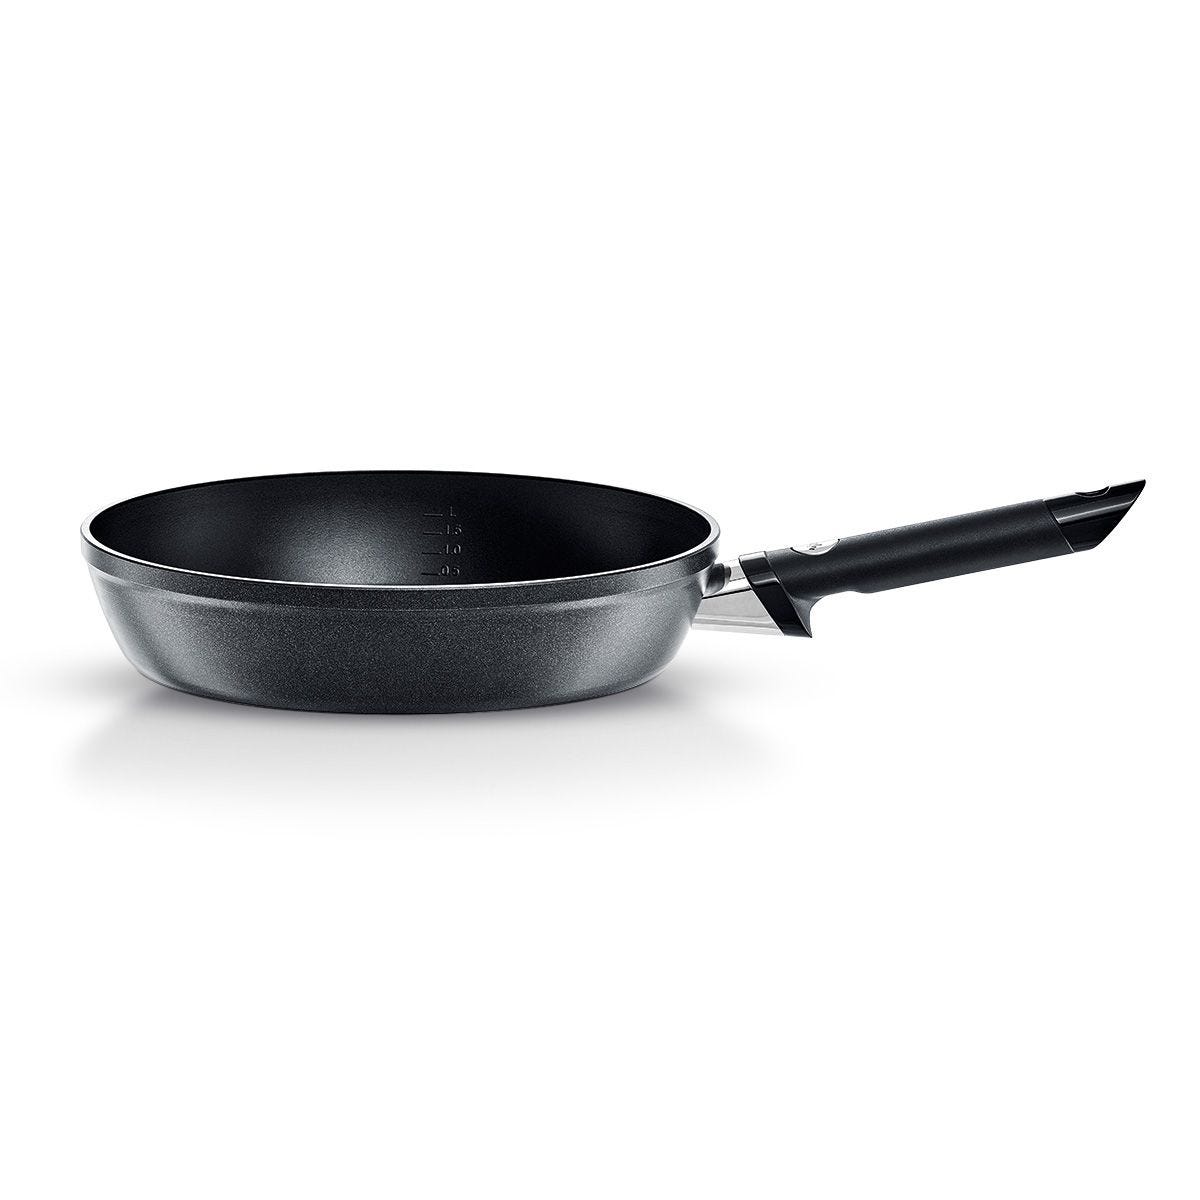 Levital® Comfort Nonstick Frying Pan